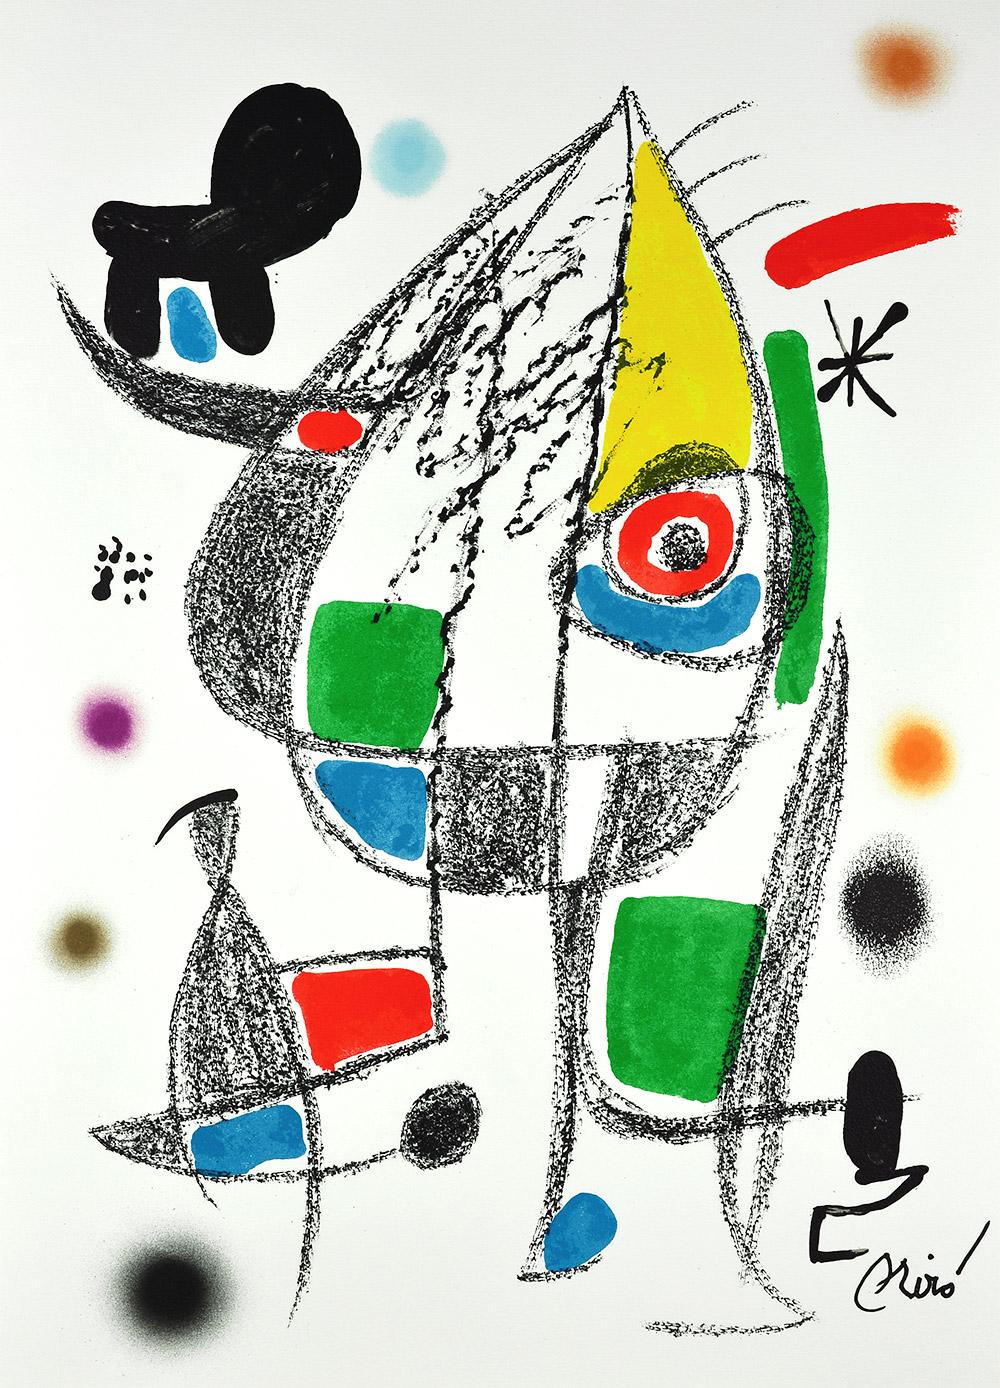 Joan Miró - Maravillas con variaciones acrósticas en el jardín de Miró XX
Date de création : 1975
Support : Lithographie sur papier Gvarro
Édition : 1500
Taille : 49,5 x 35,5 cm
Condit : En très bon état et jamais encadré
Observations : Lithographie